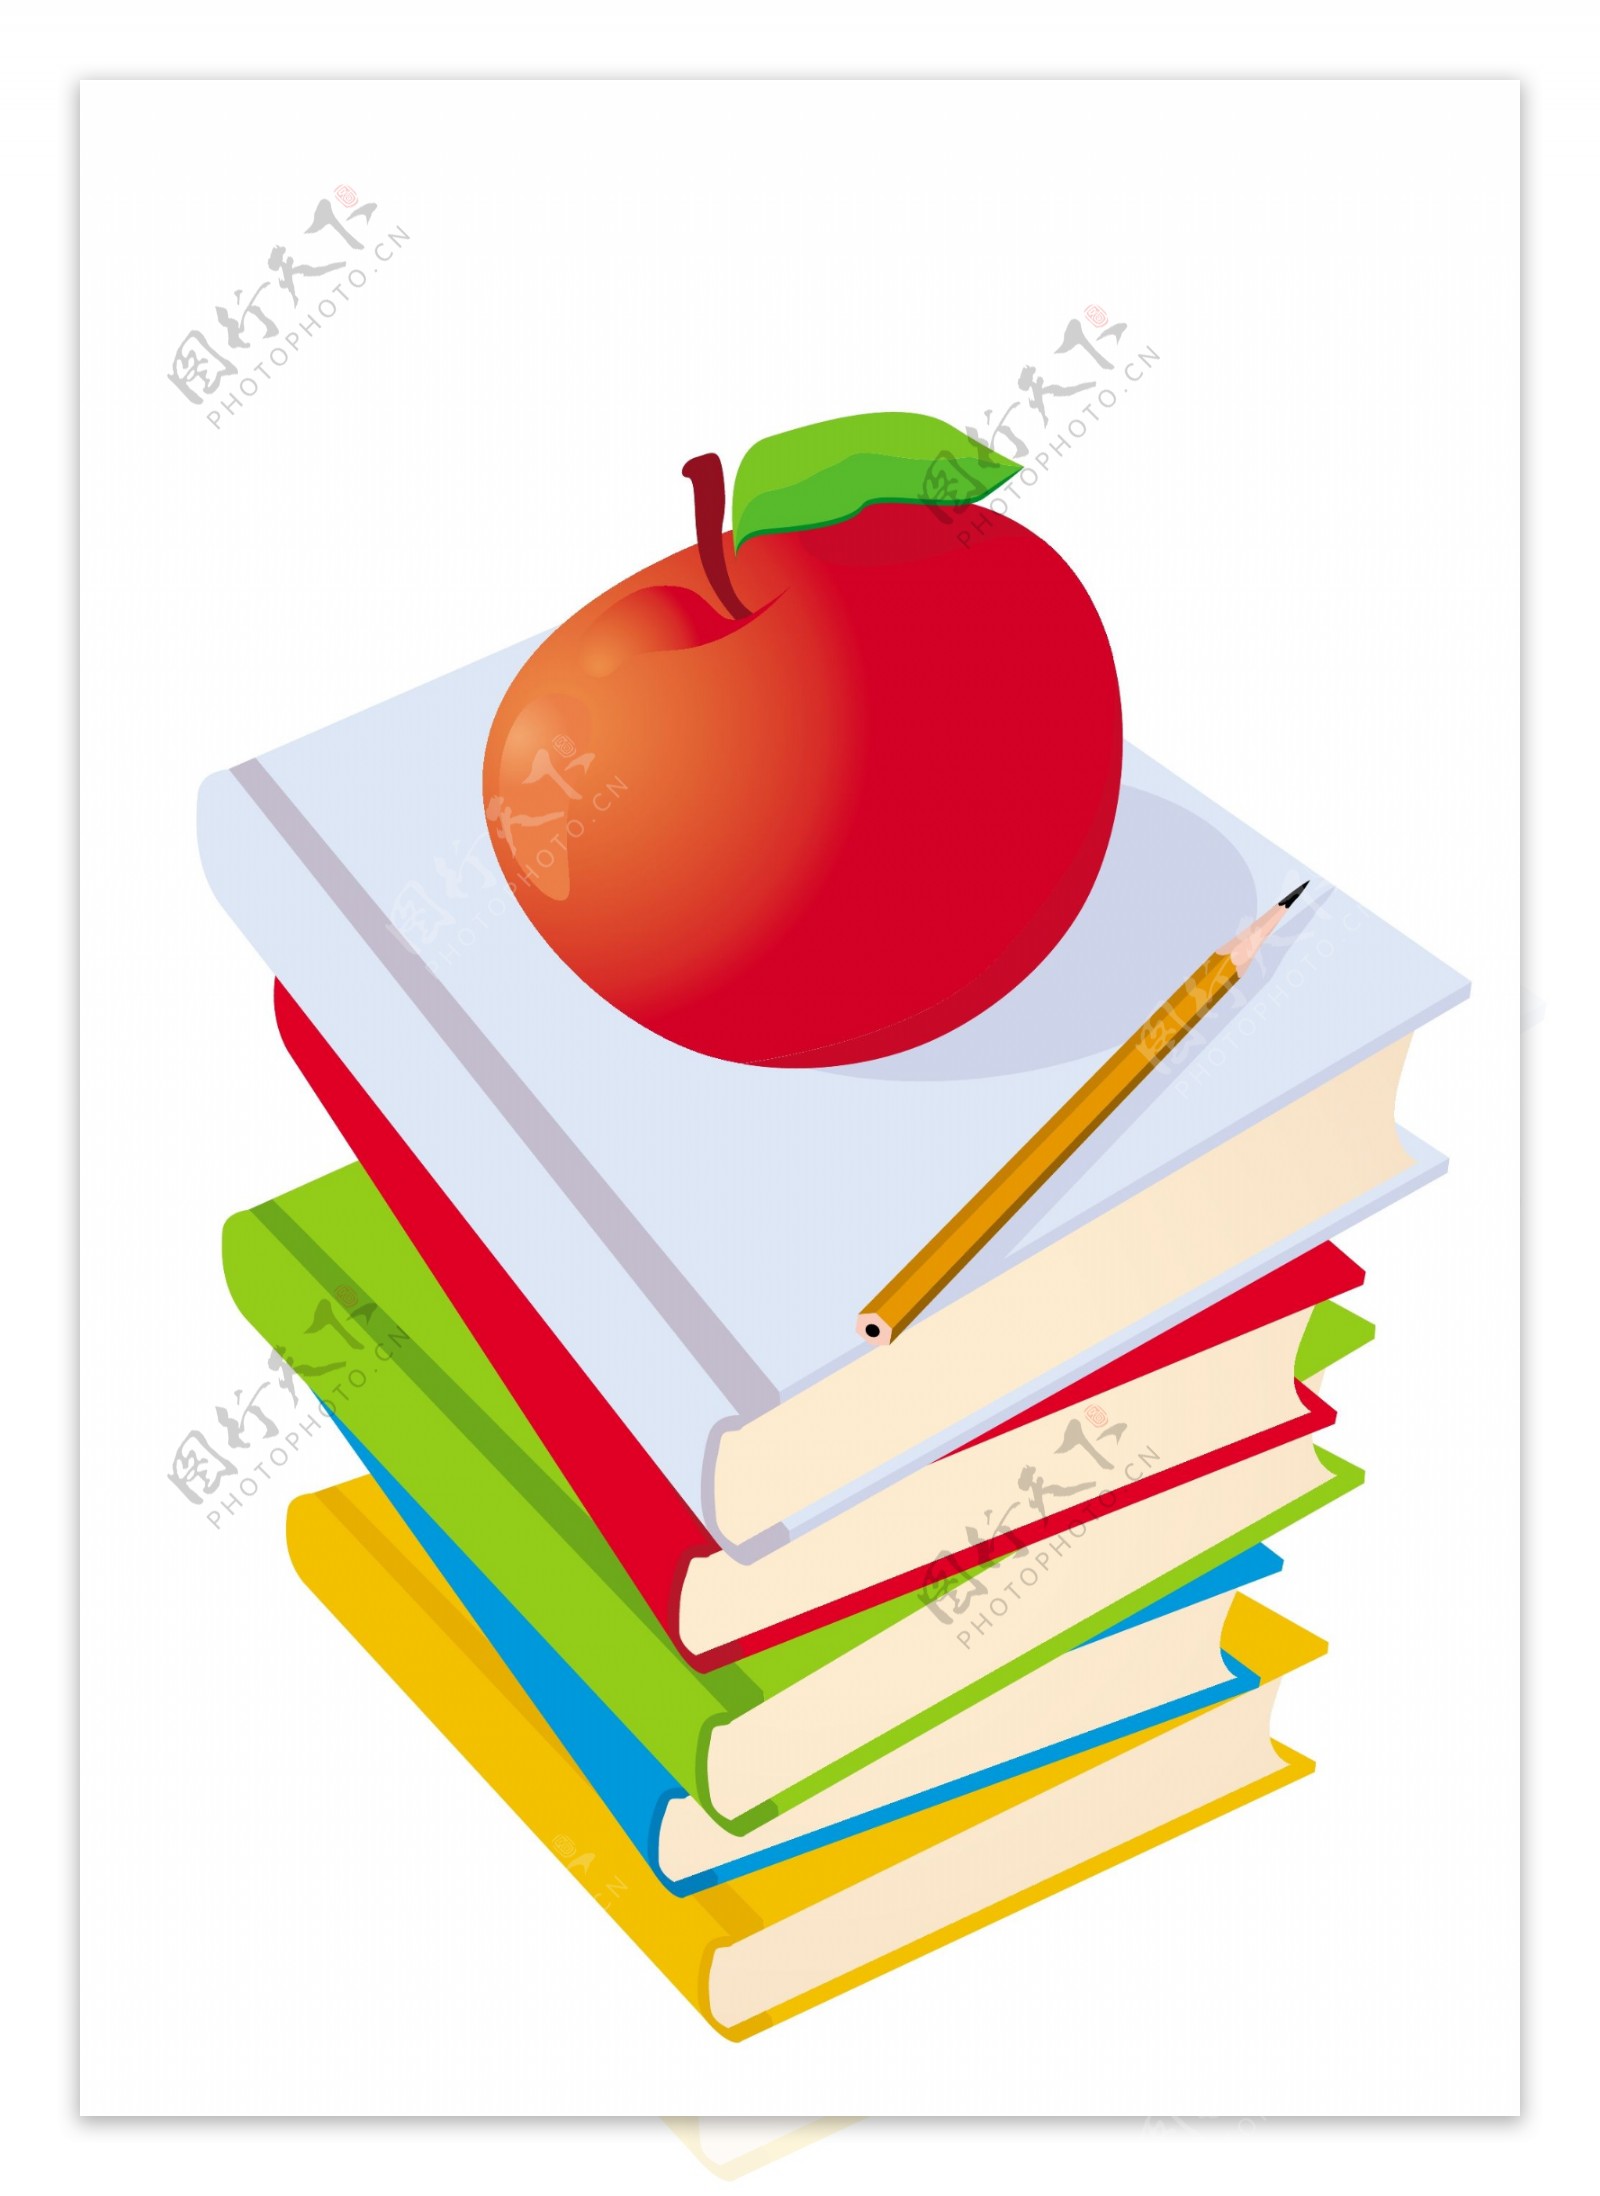 矢量插图的书和铅笔孤立在白色苹果